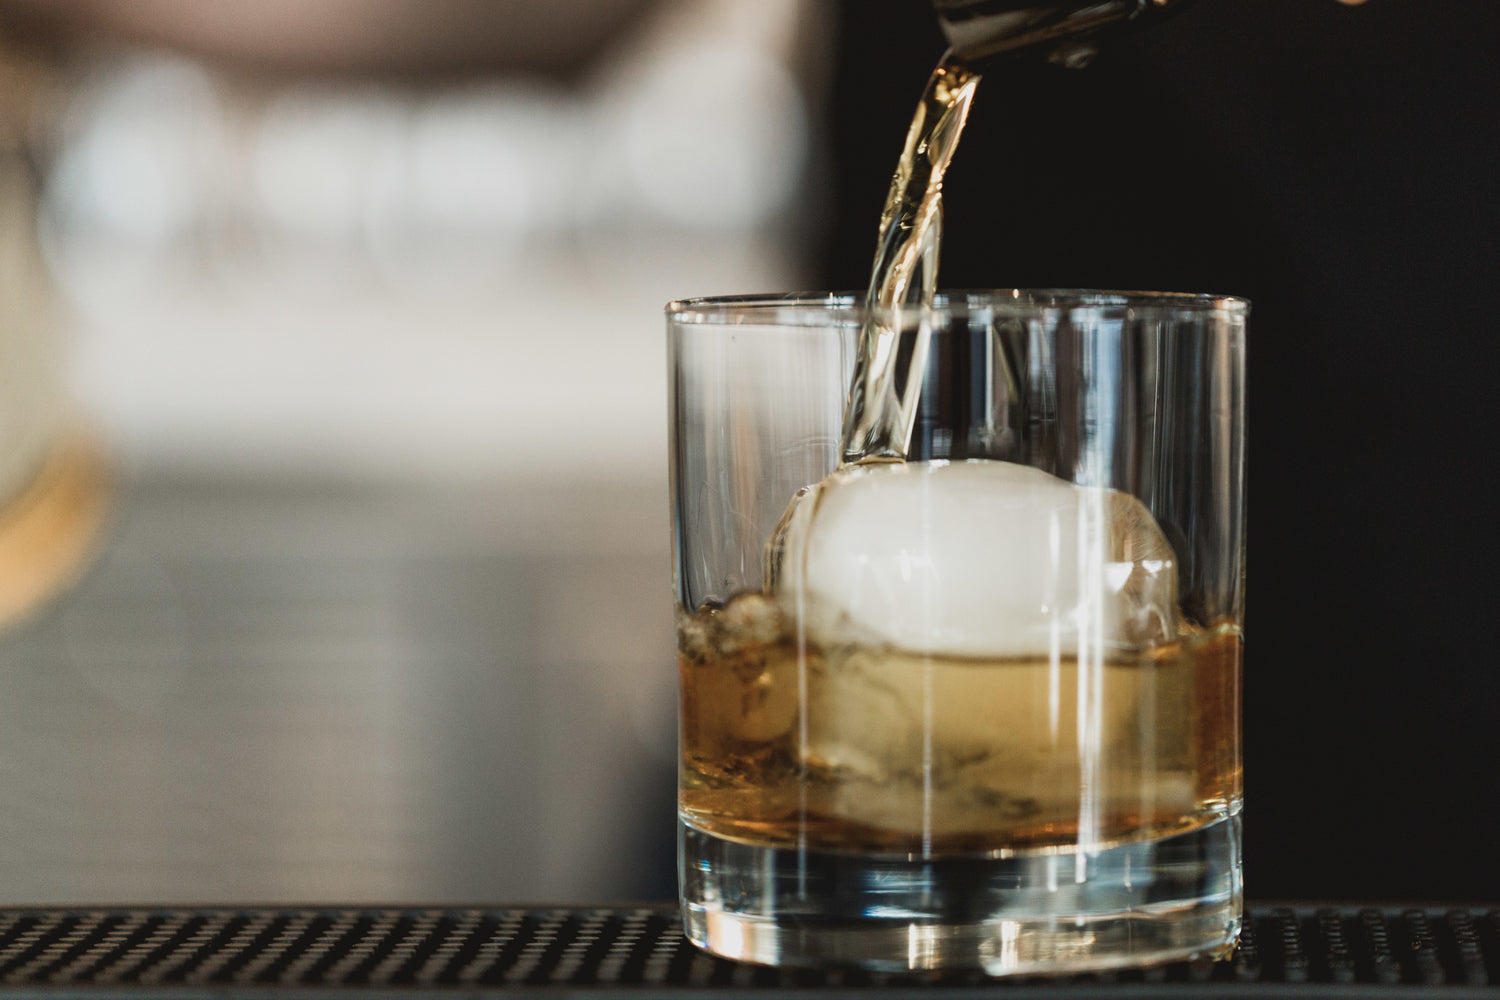 Bourbon poured into a glass